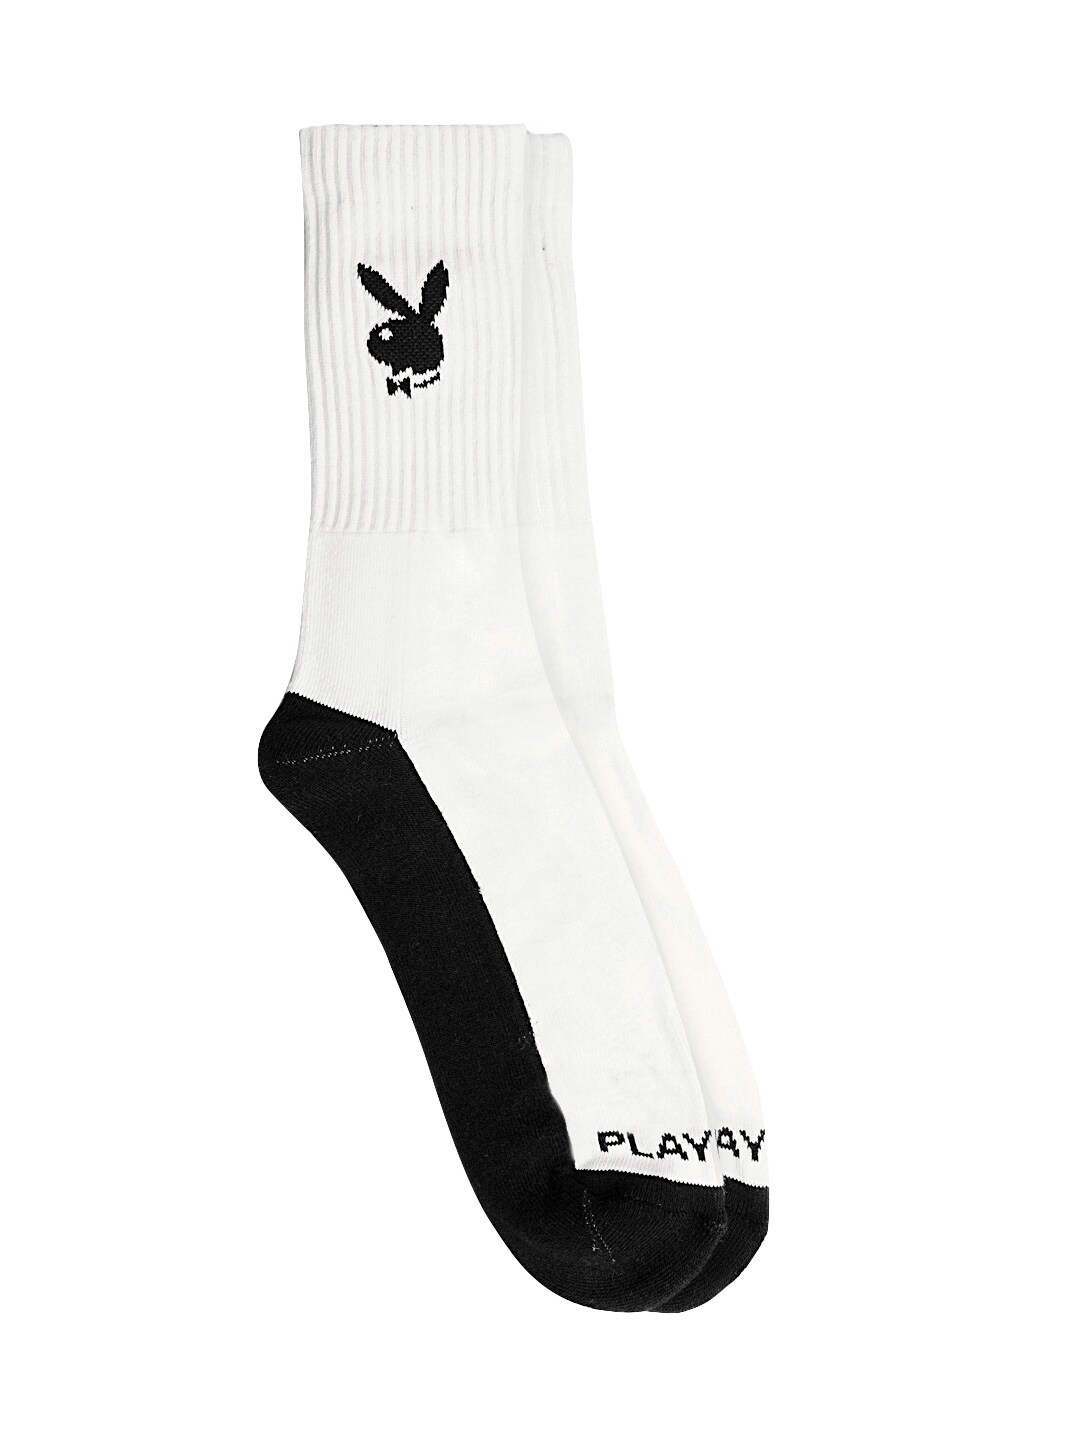 Playboy Men Black and White Socks